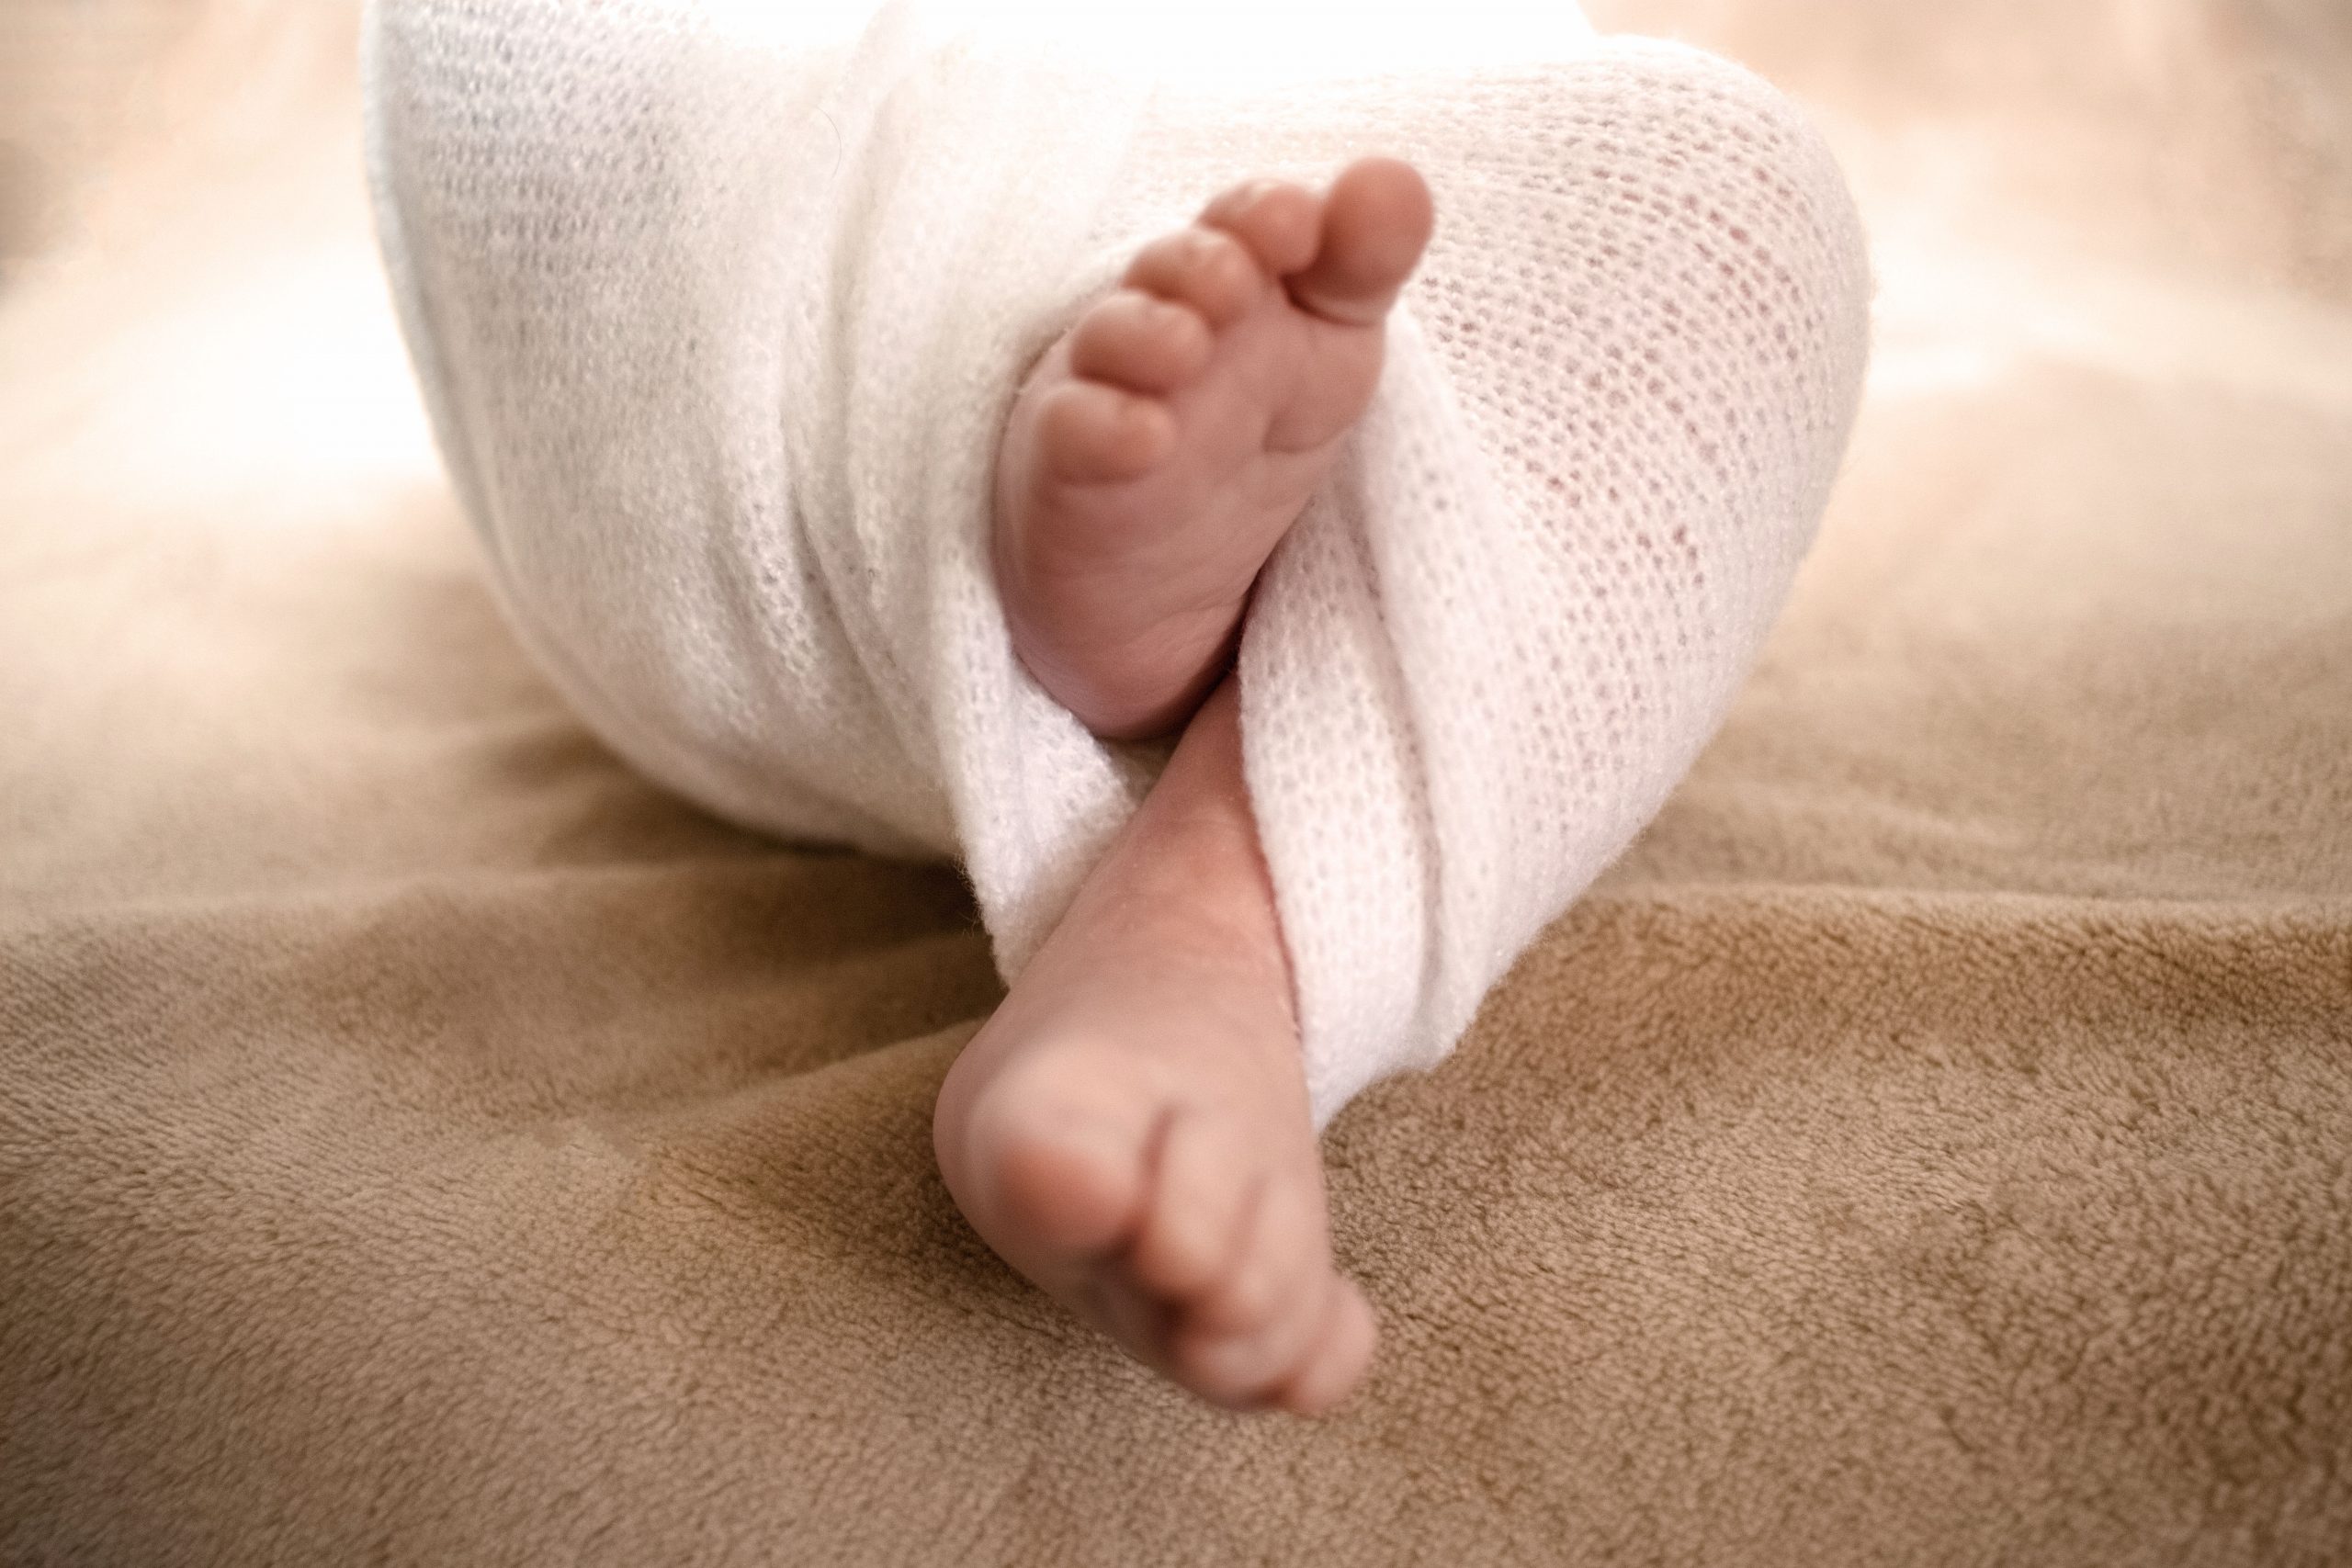 photographe naissance, pieds bébé, petons nourrisson